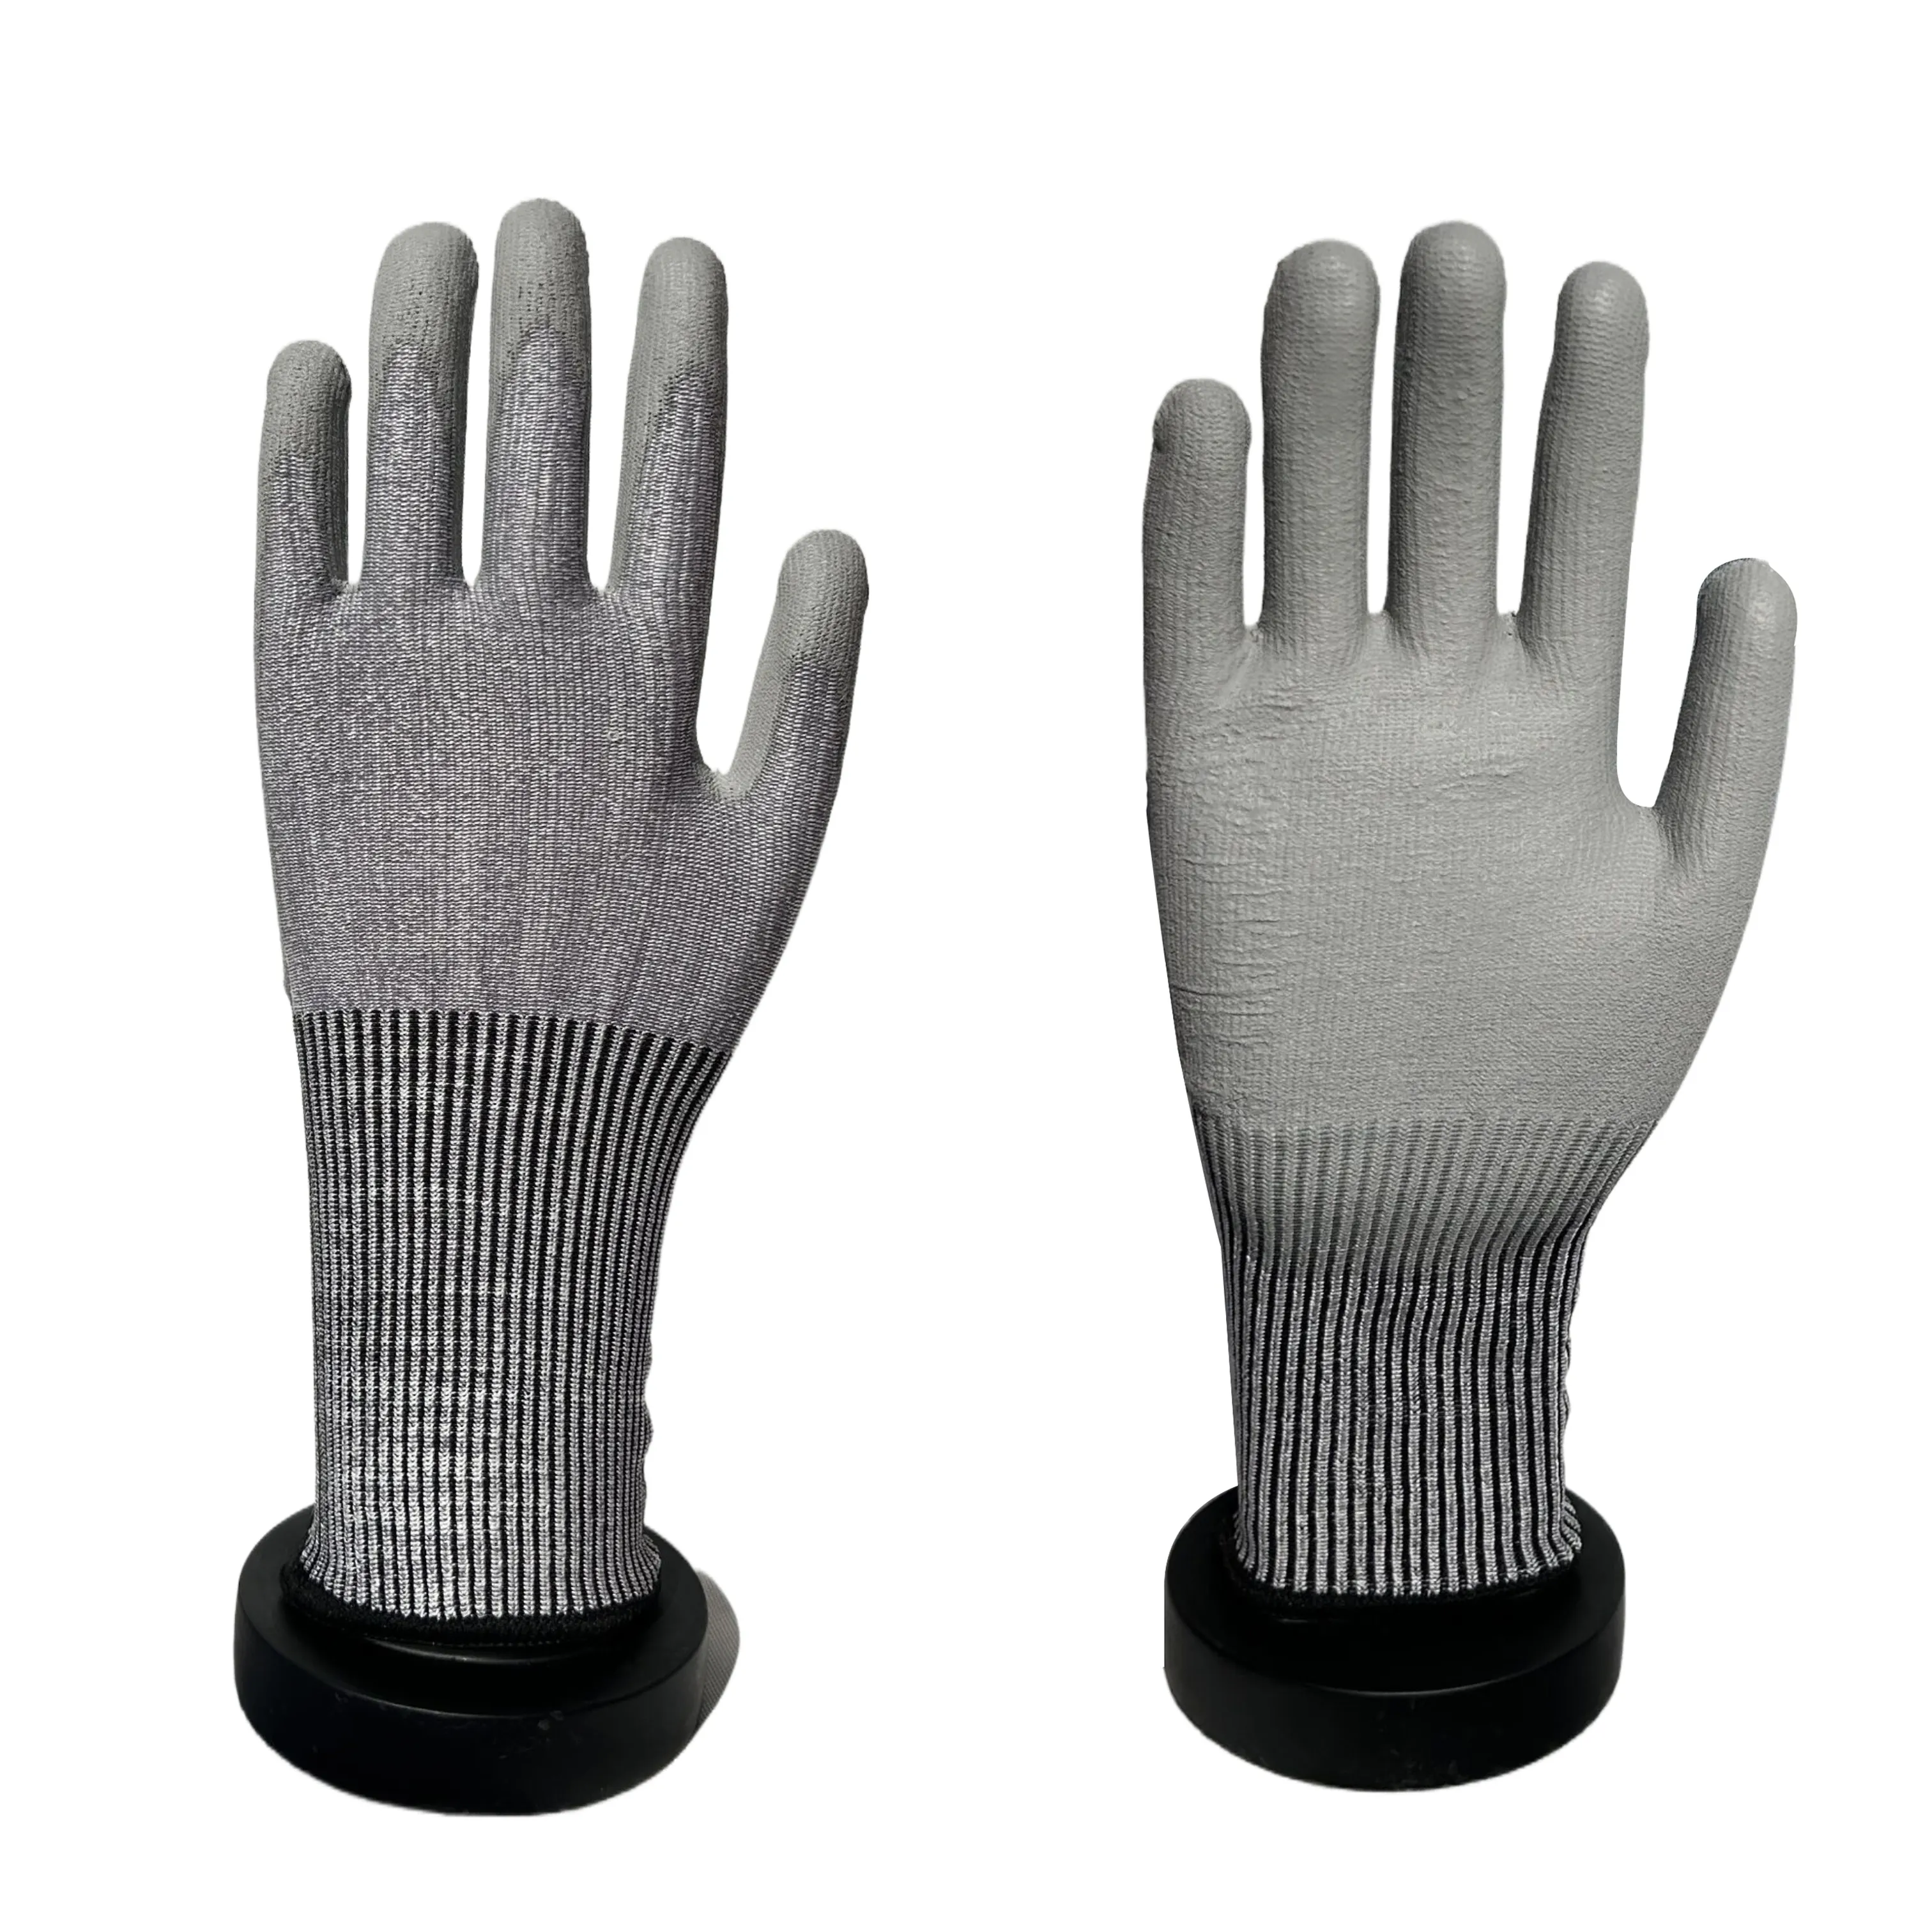 ODM 13 г трикотажные черные нейлоновые перчатки из полиуретана с пальмовым покрытием перчатки для безопасности работы садовые перчатки Рабочая безопасность